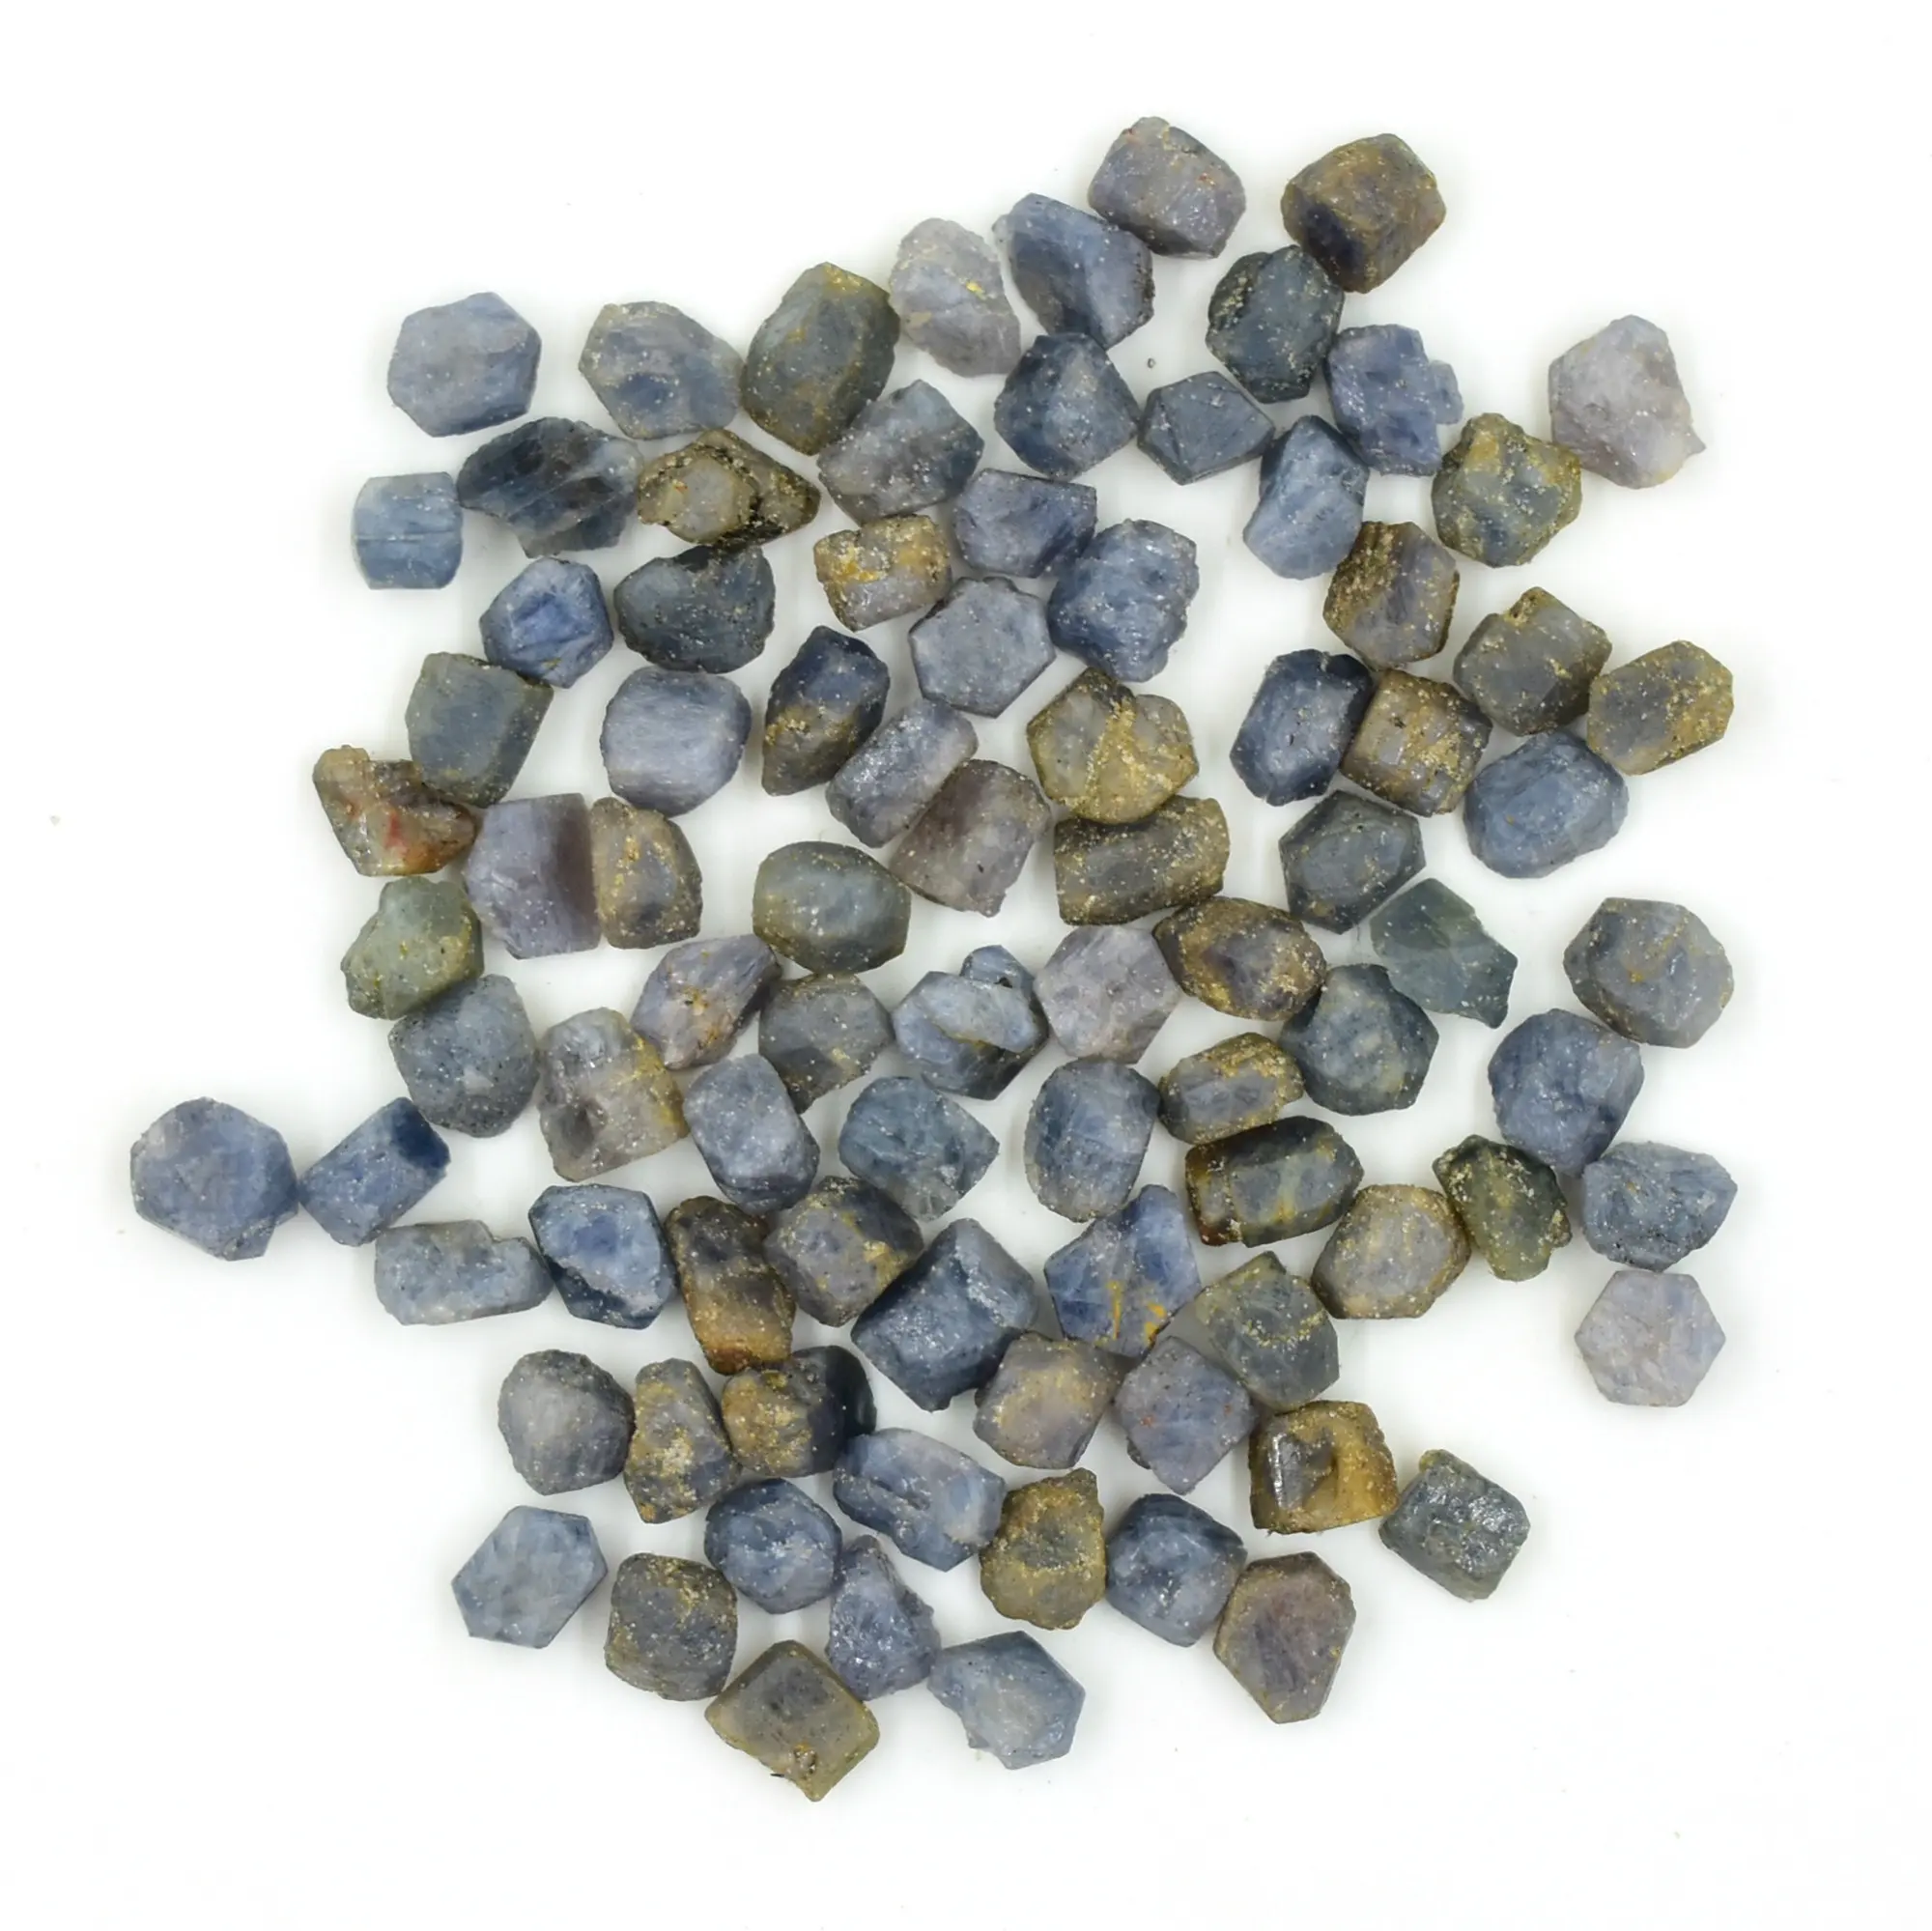 Gema rugosa de cristal de zafiro azul, piedra de nacimiento pequeña sin procesar para fabricación de joyas, joyería curativa